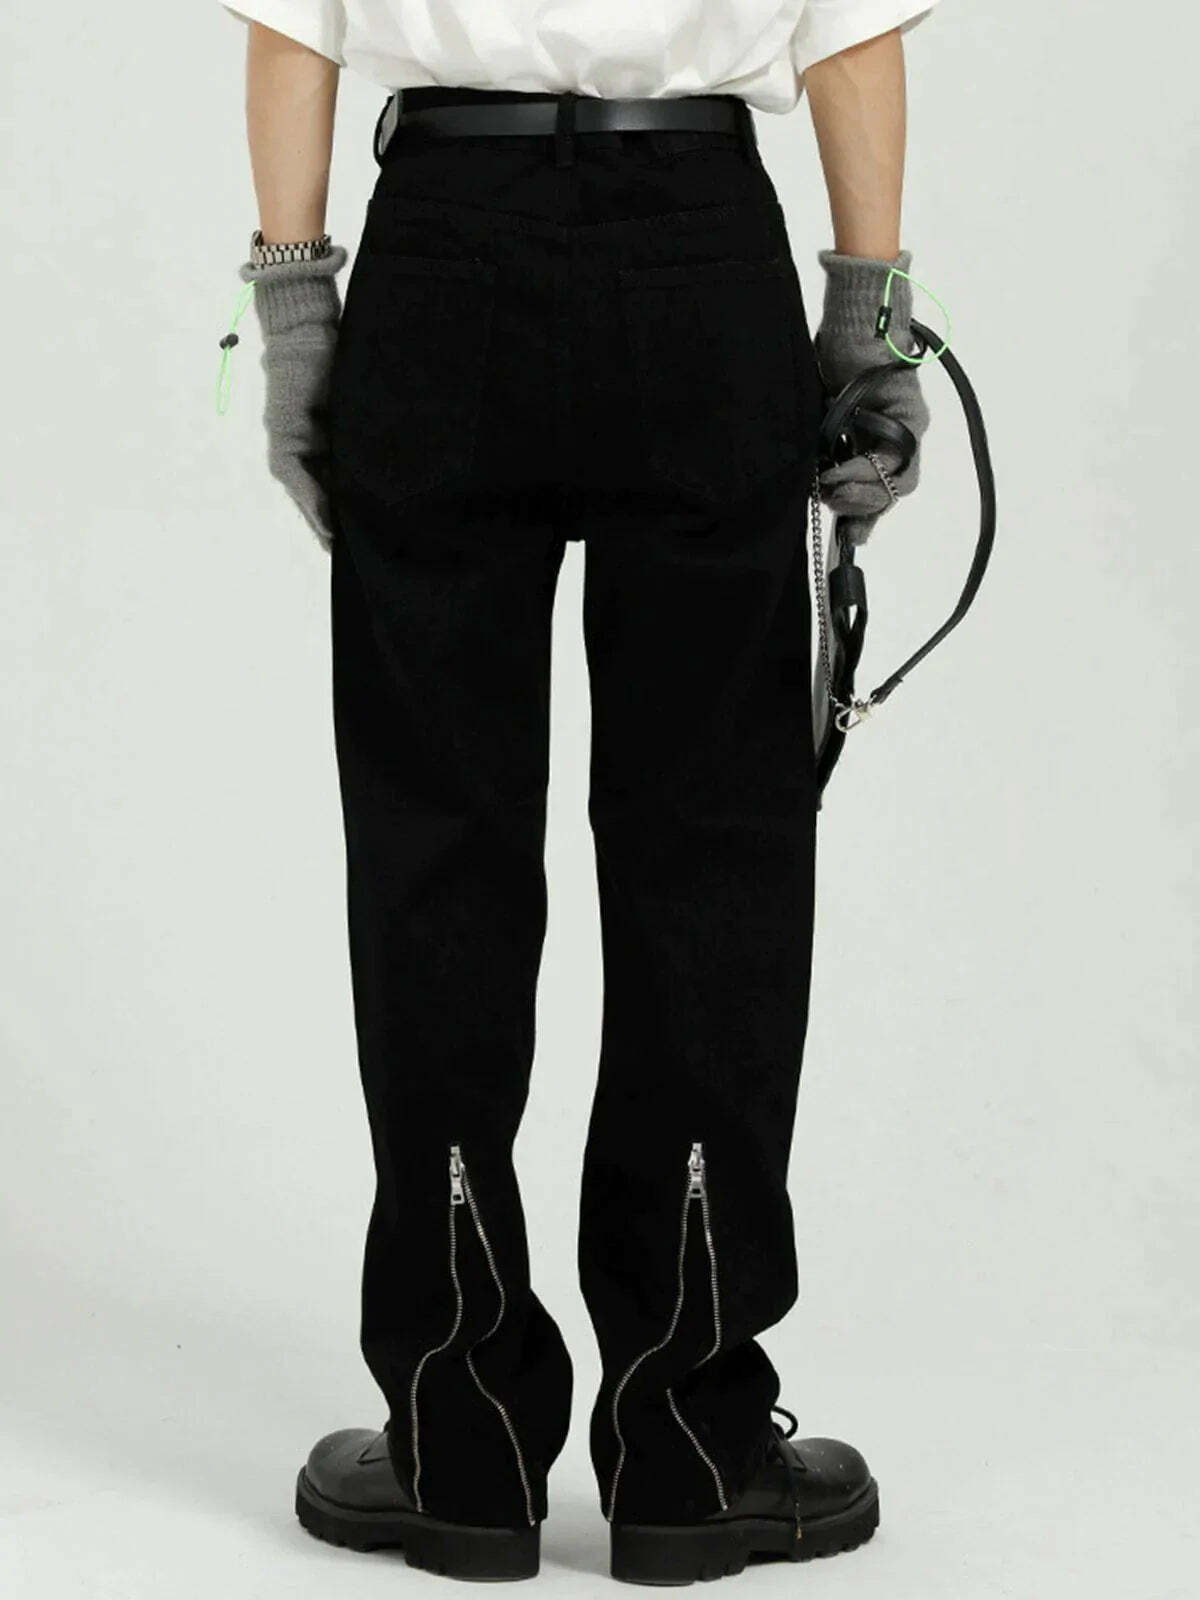 statement zip jeans edgy & sleek streetwear 6650